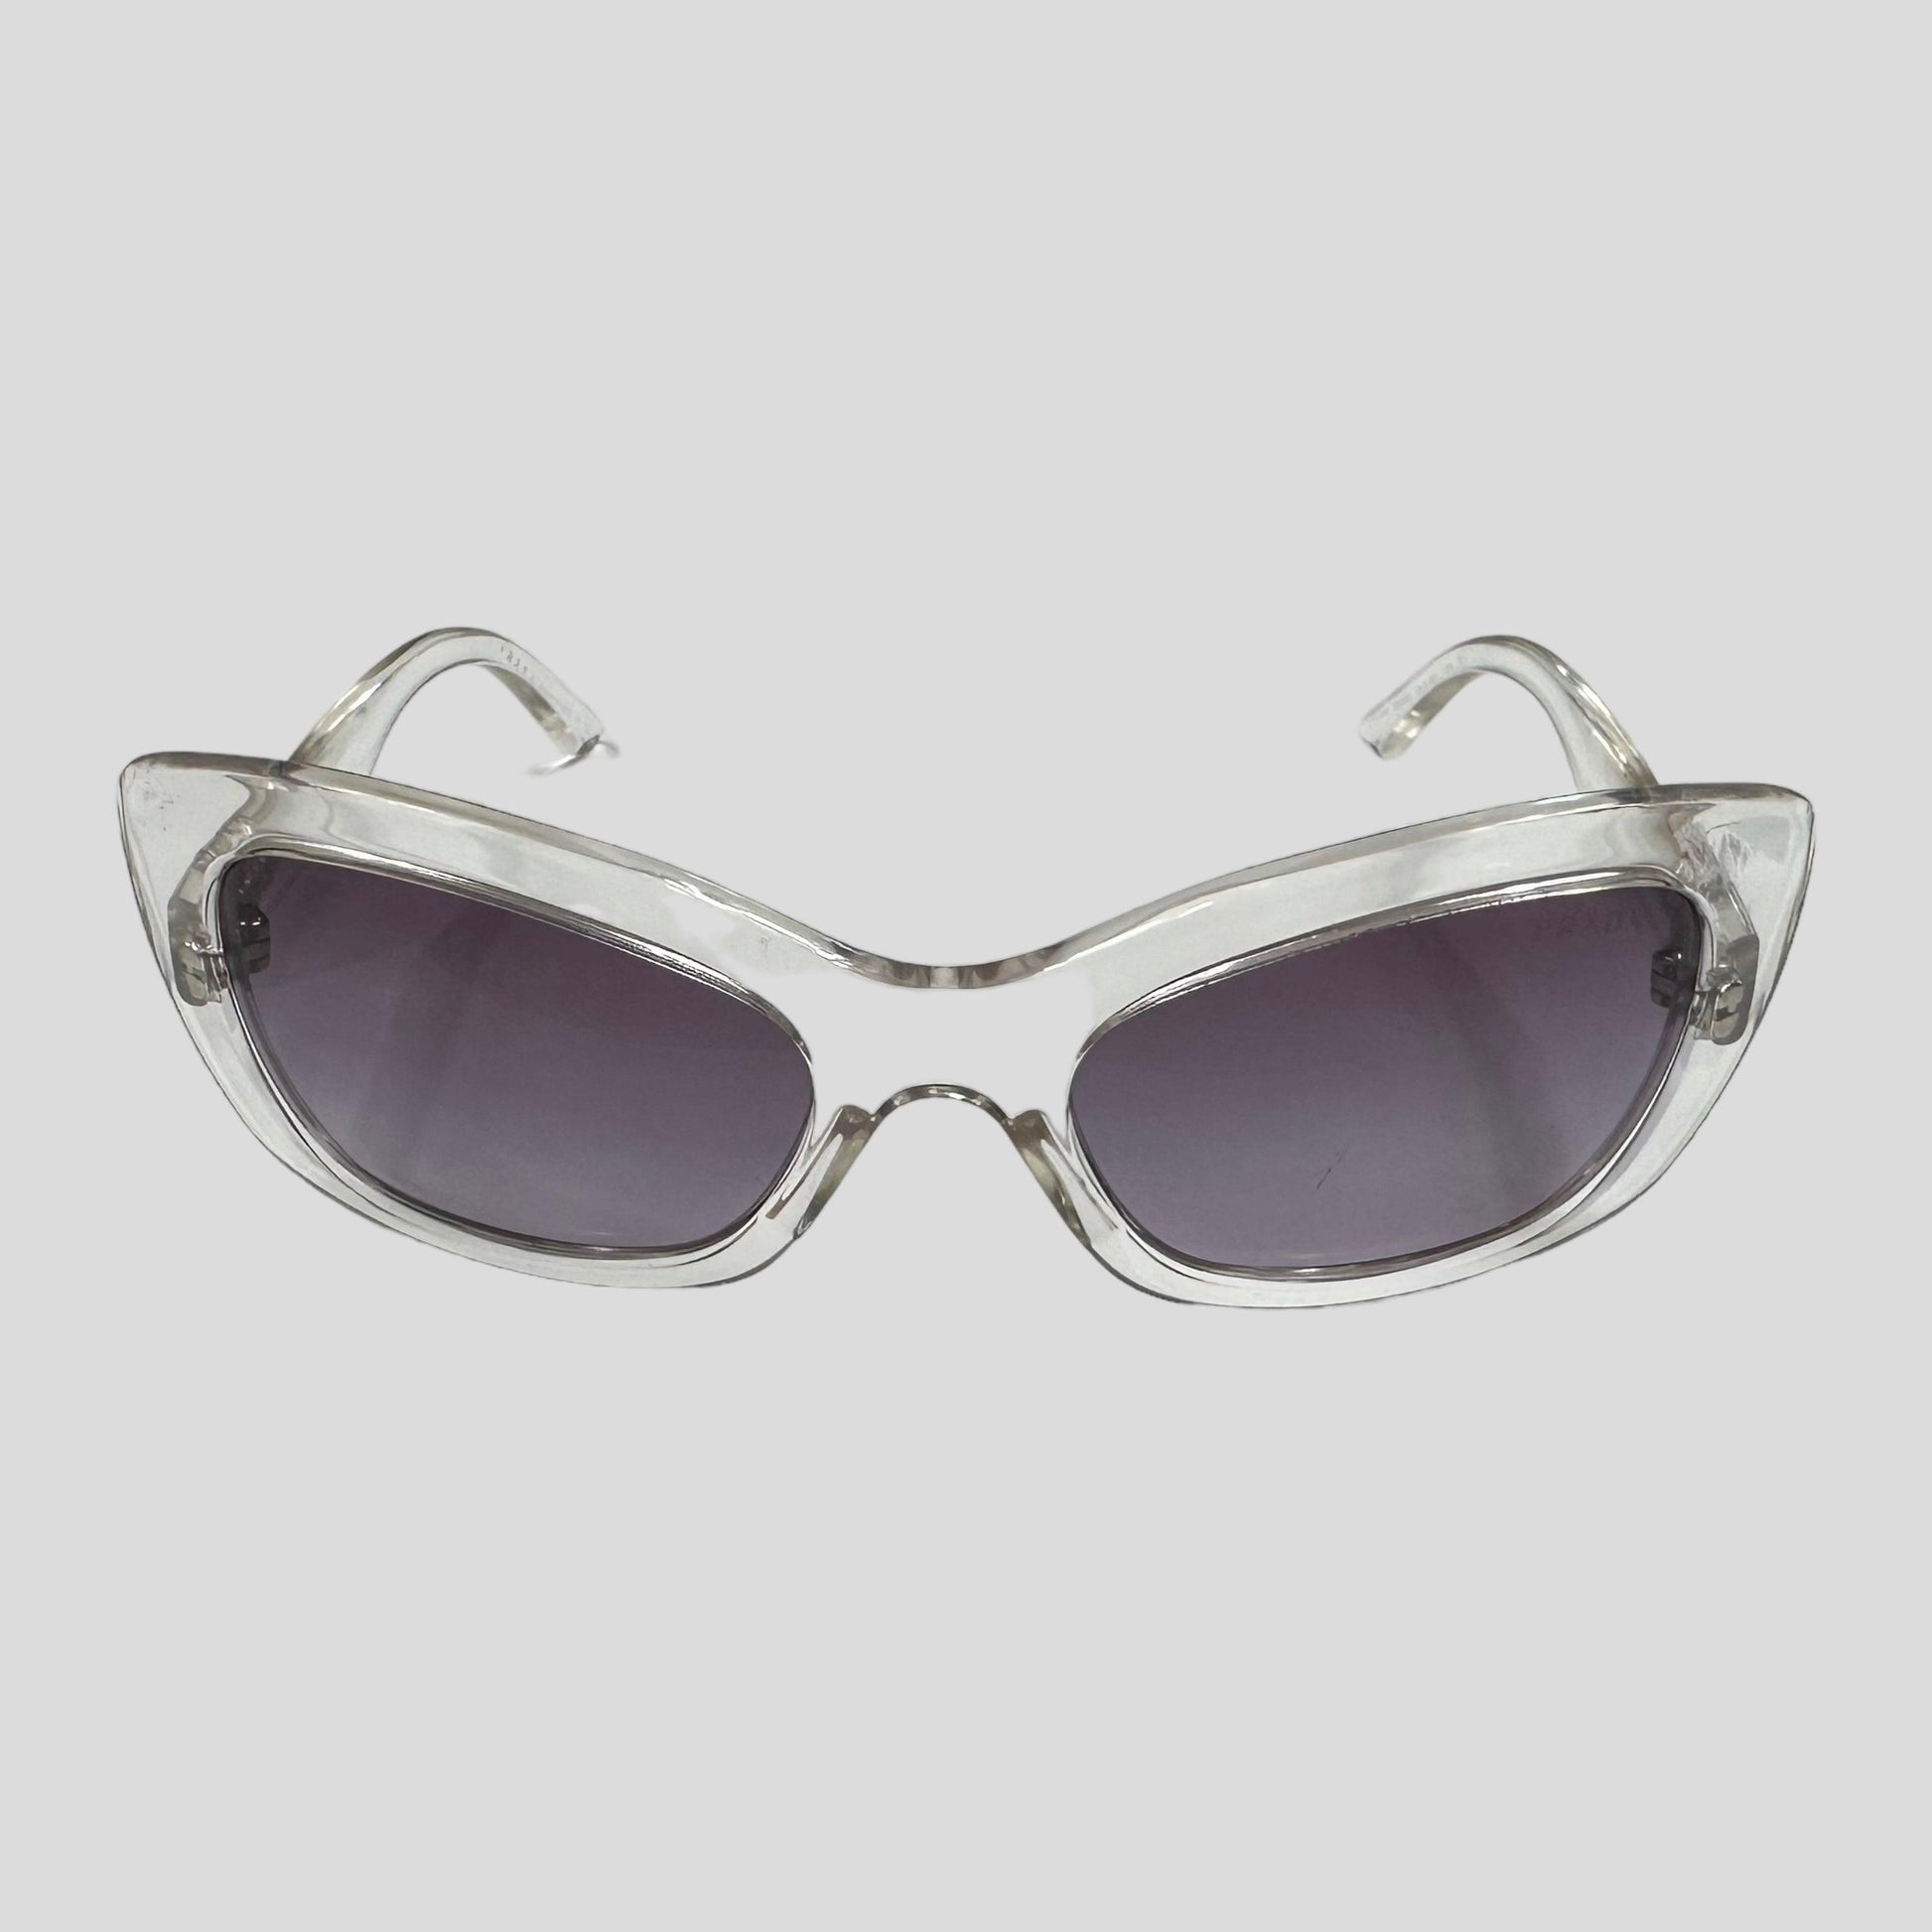 Prada Milano Clear + Lavender Sunglasses - Known Source